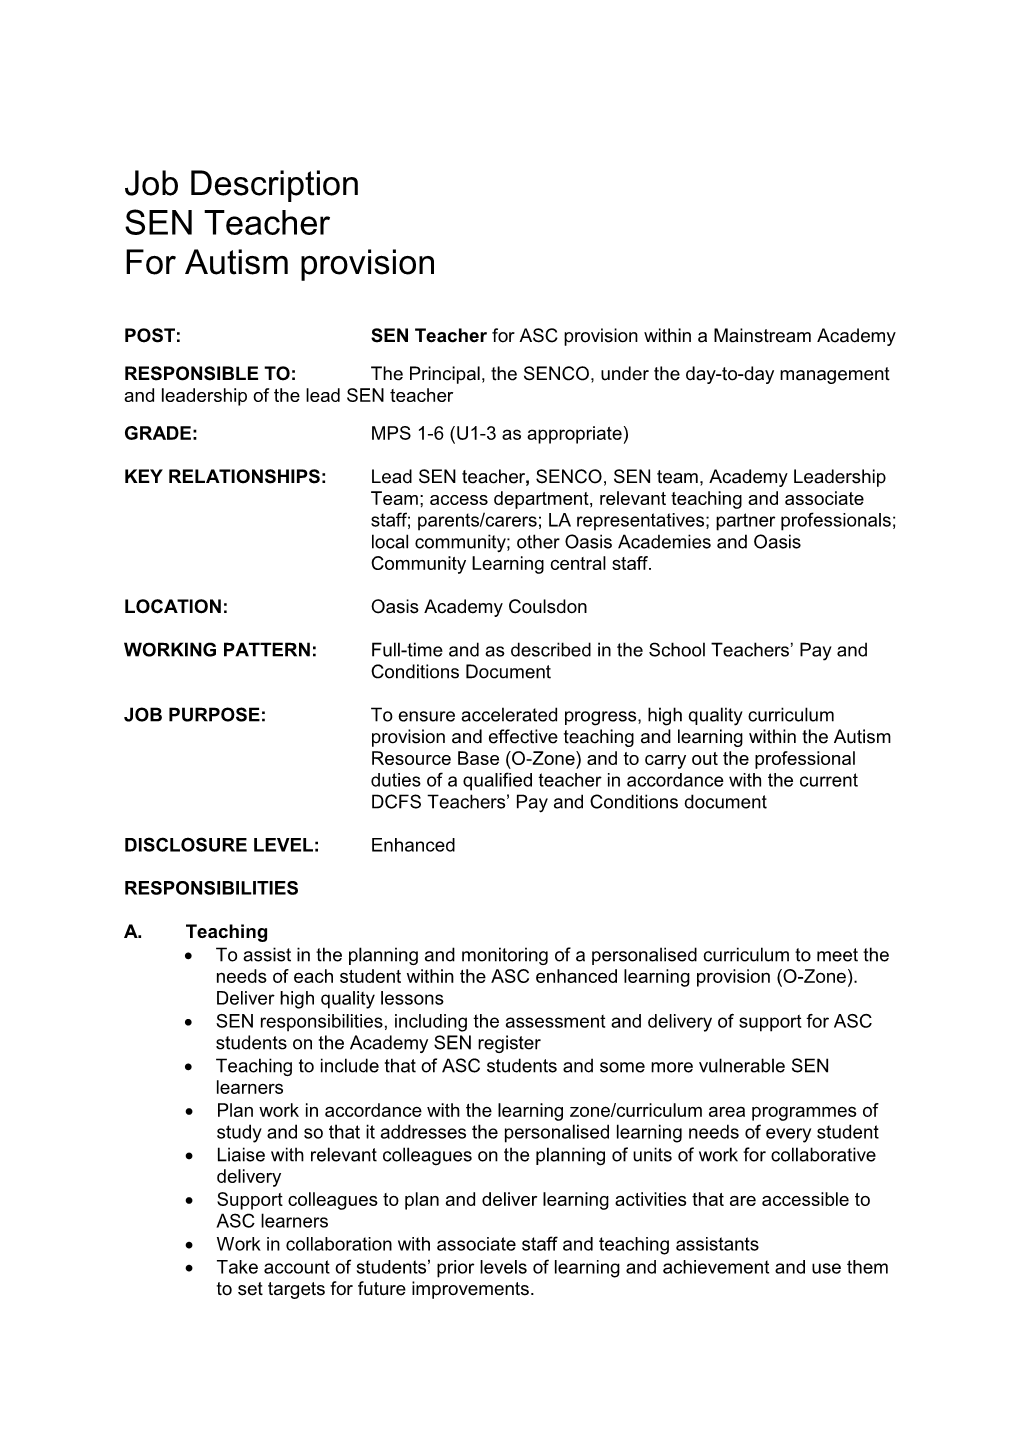 Job Description SEN Teacher for Autism Provision